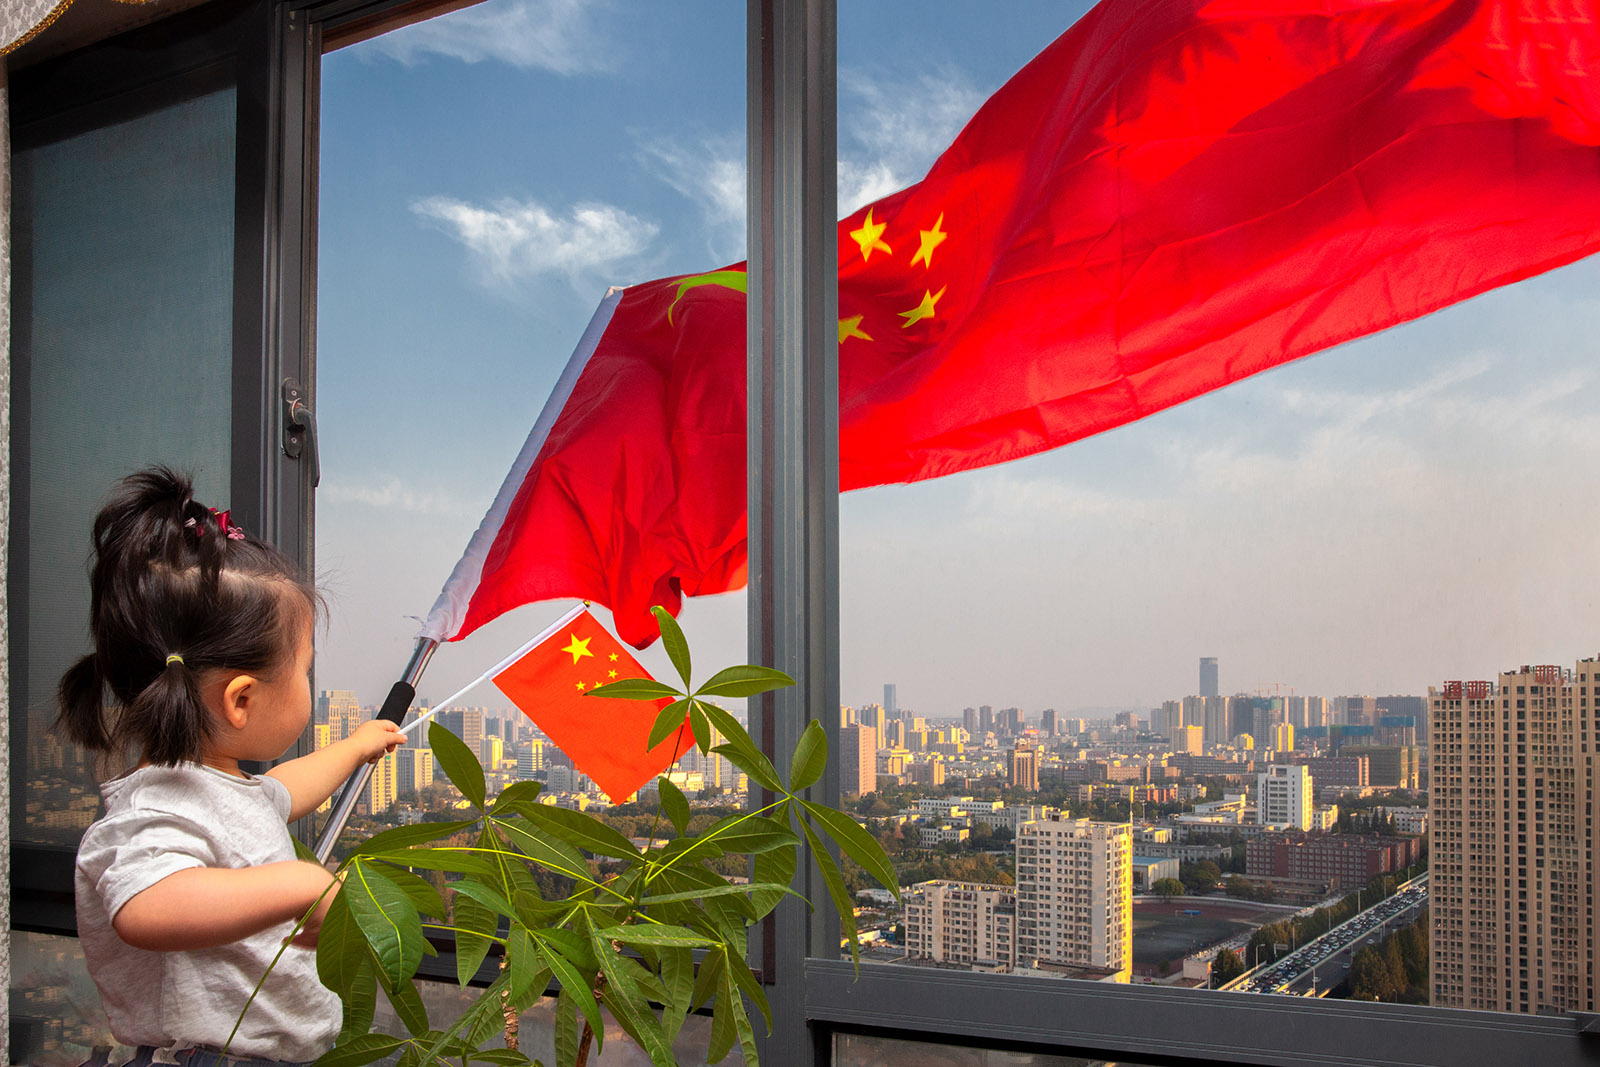 龔思諾(小學組)北京《五星紅旗》 國慶70周年前夕，妹妹拿著國旗站在陽台上，五星紅旗迎風飄揚。搜索復制